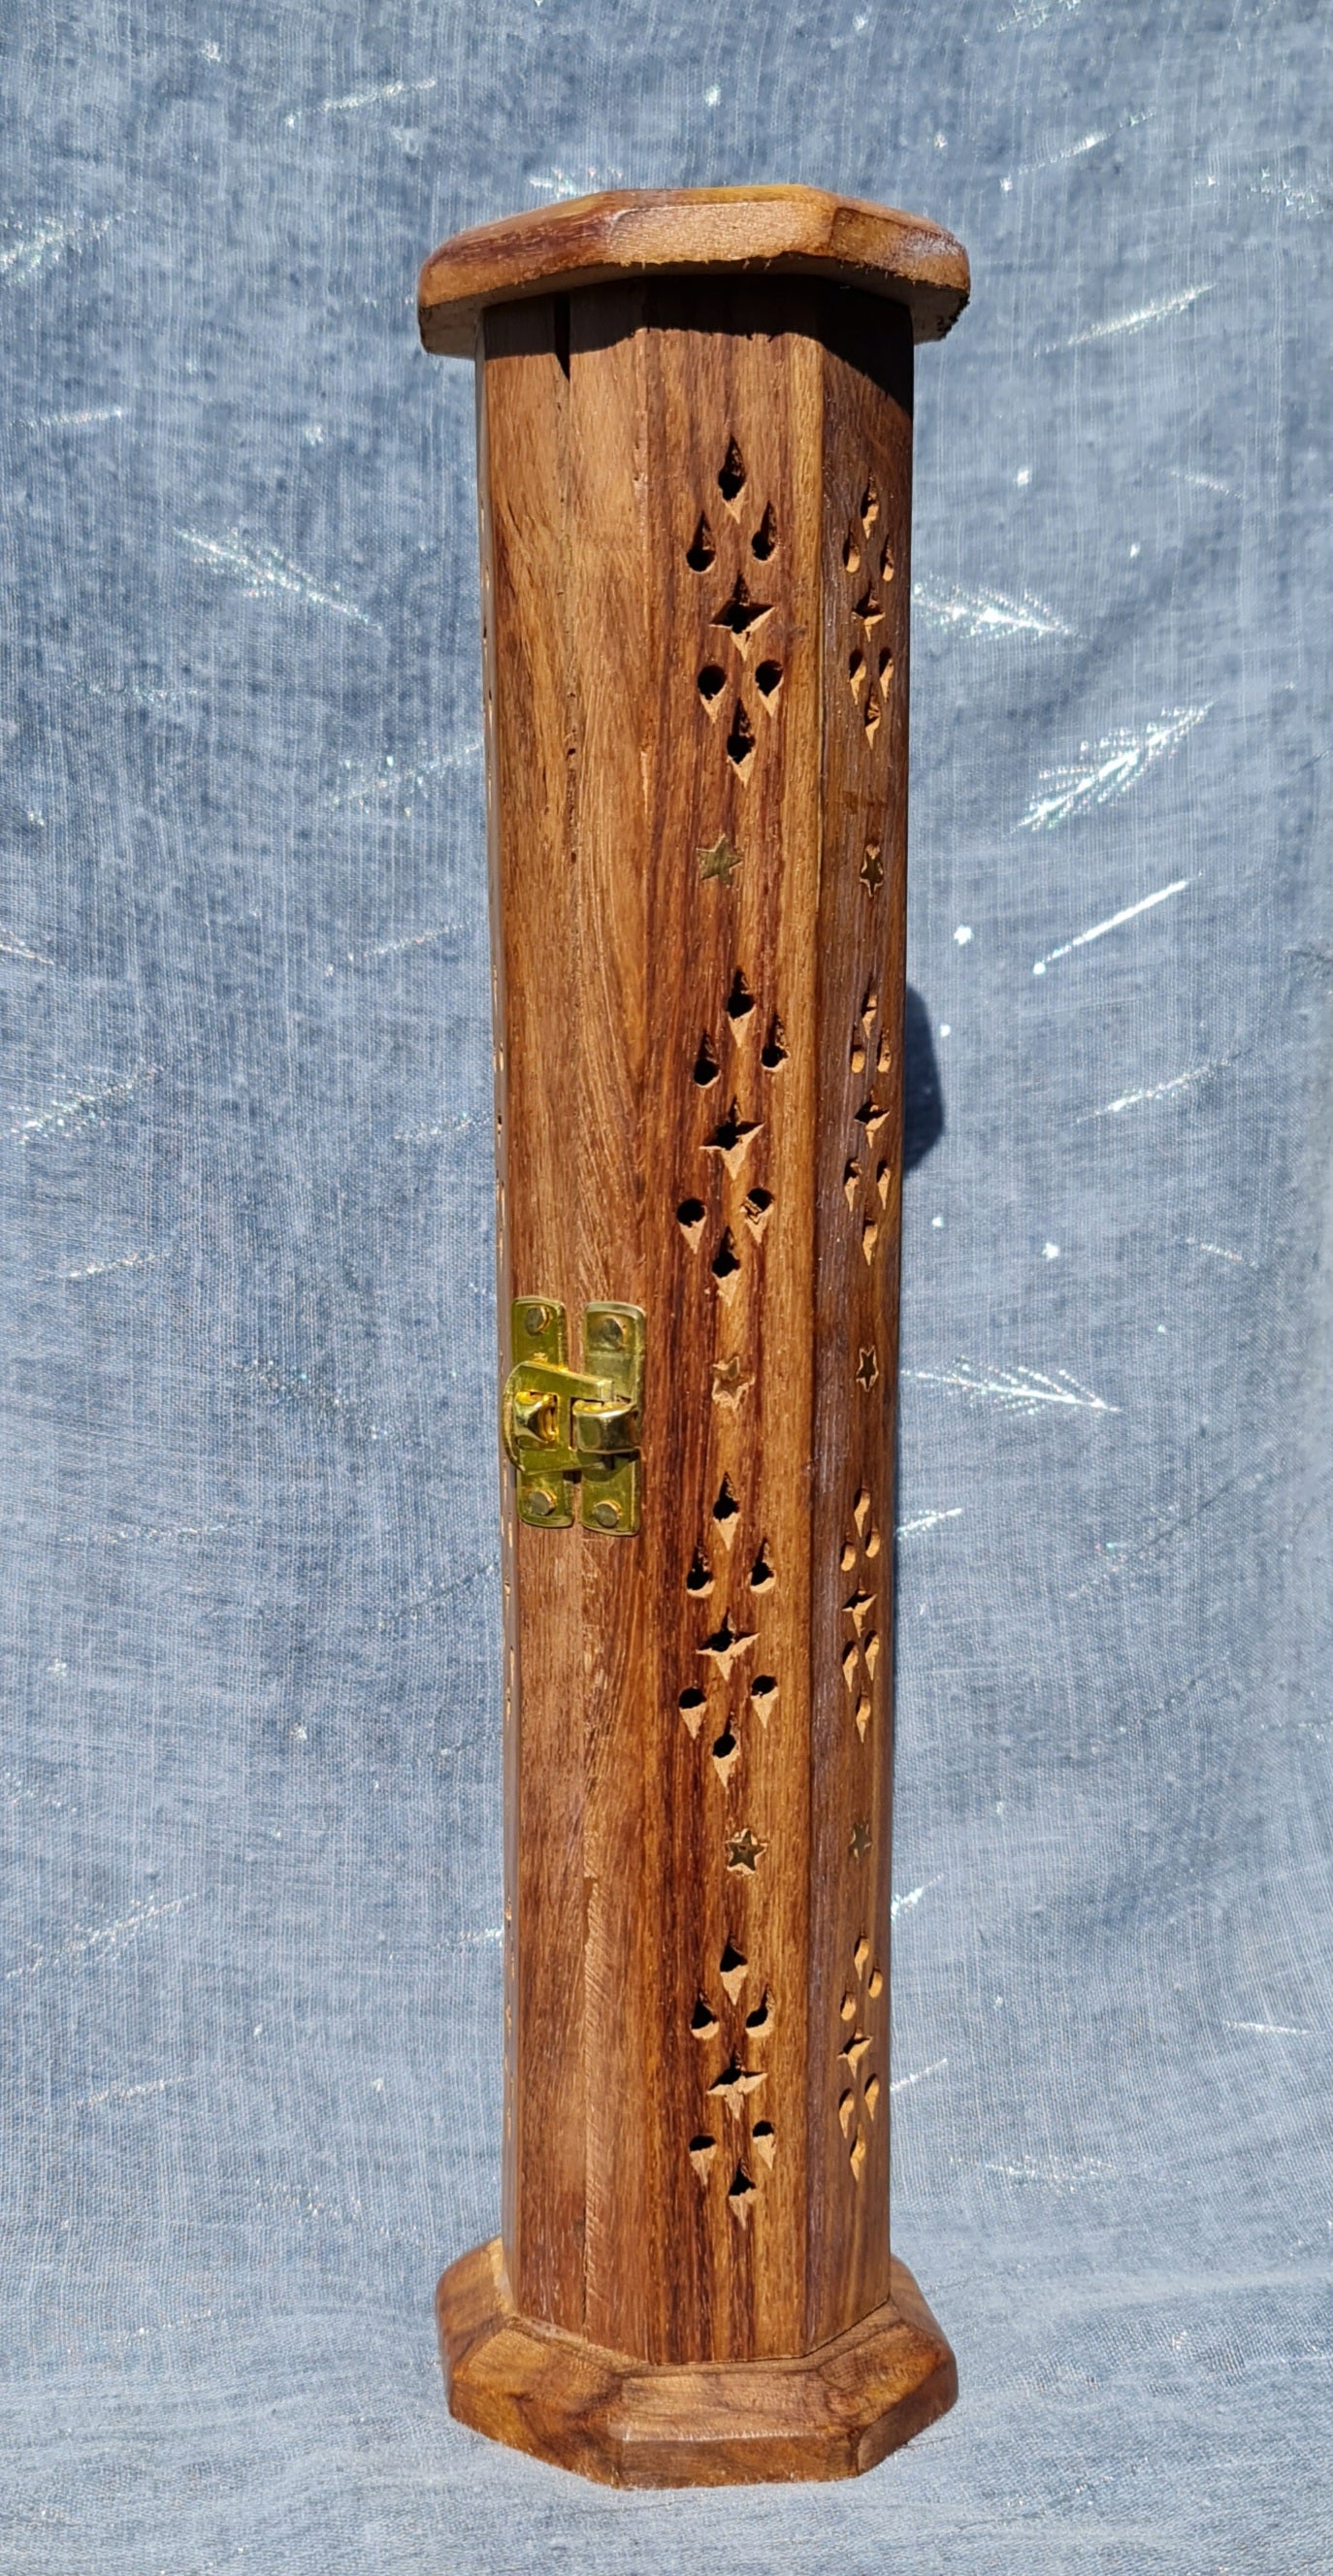 Tower Wood Incense Burner with Door